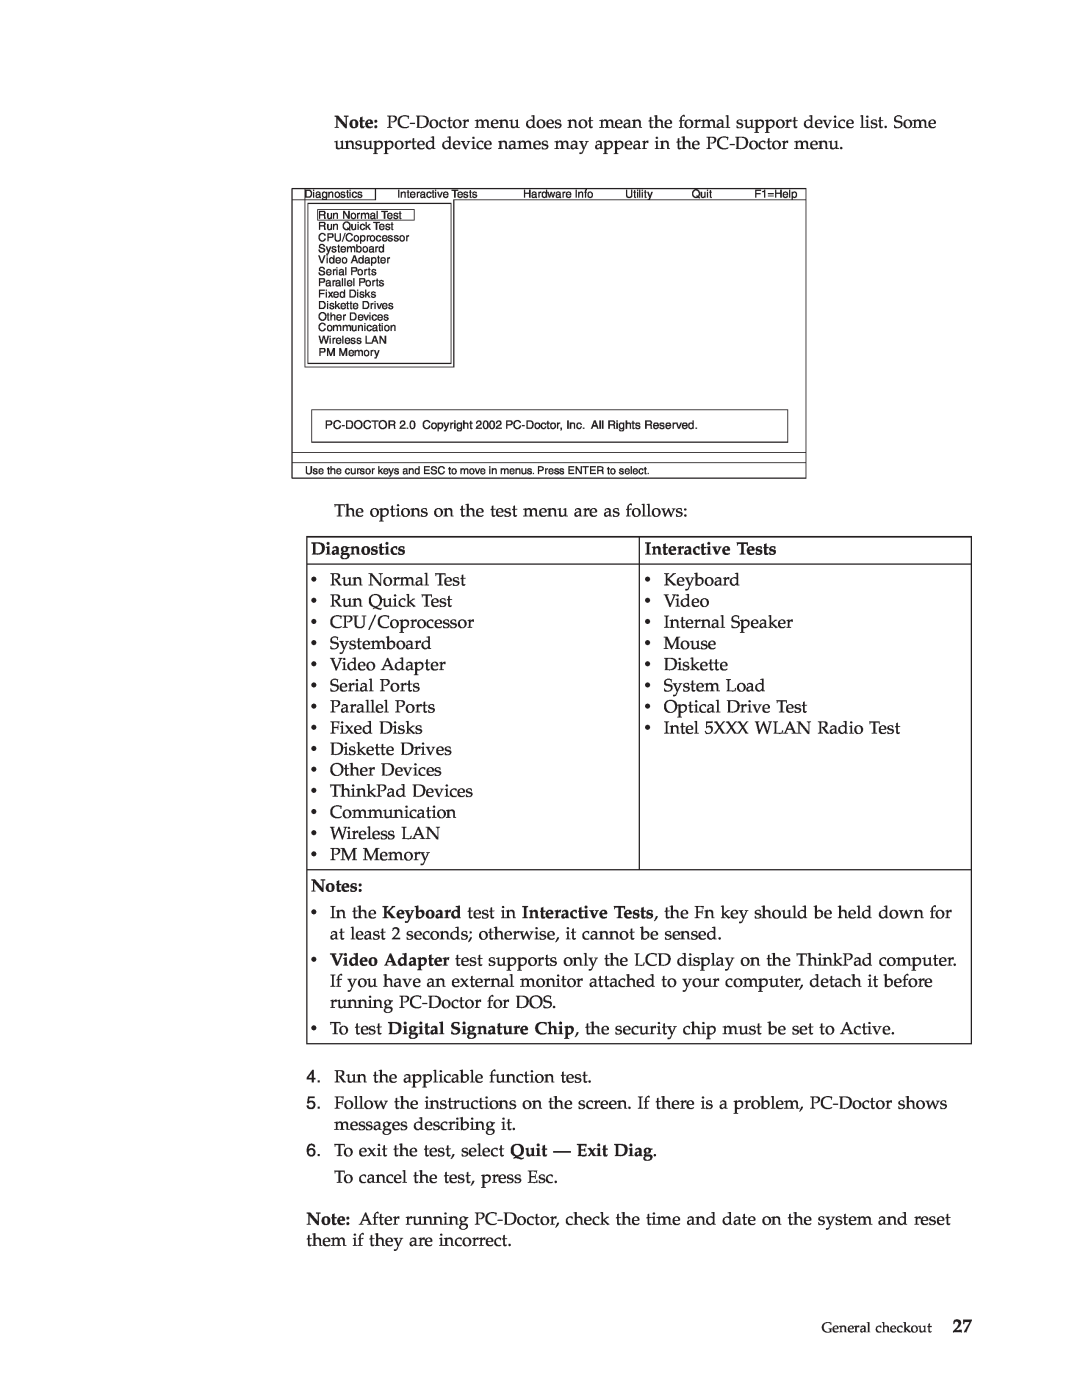 Lenovo X200 manual Diagnostics, Interactive Tests, Notes 